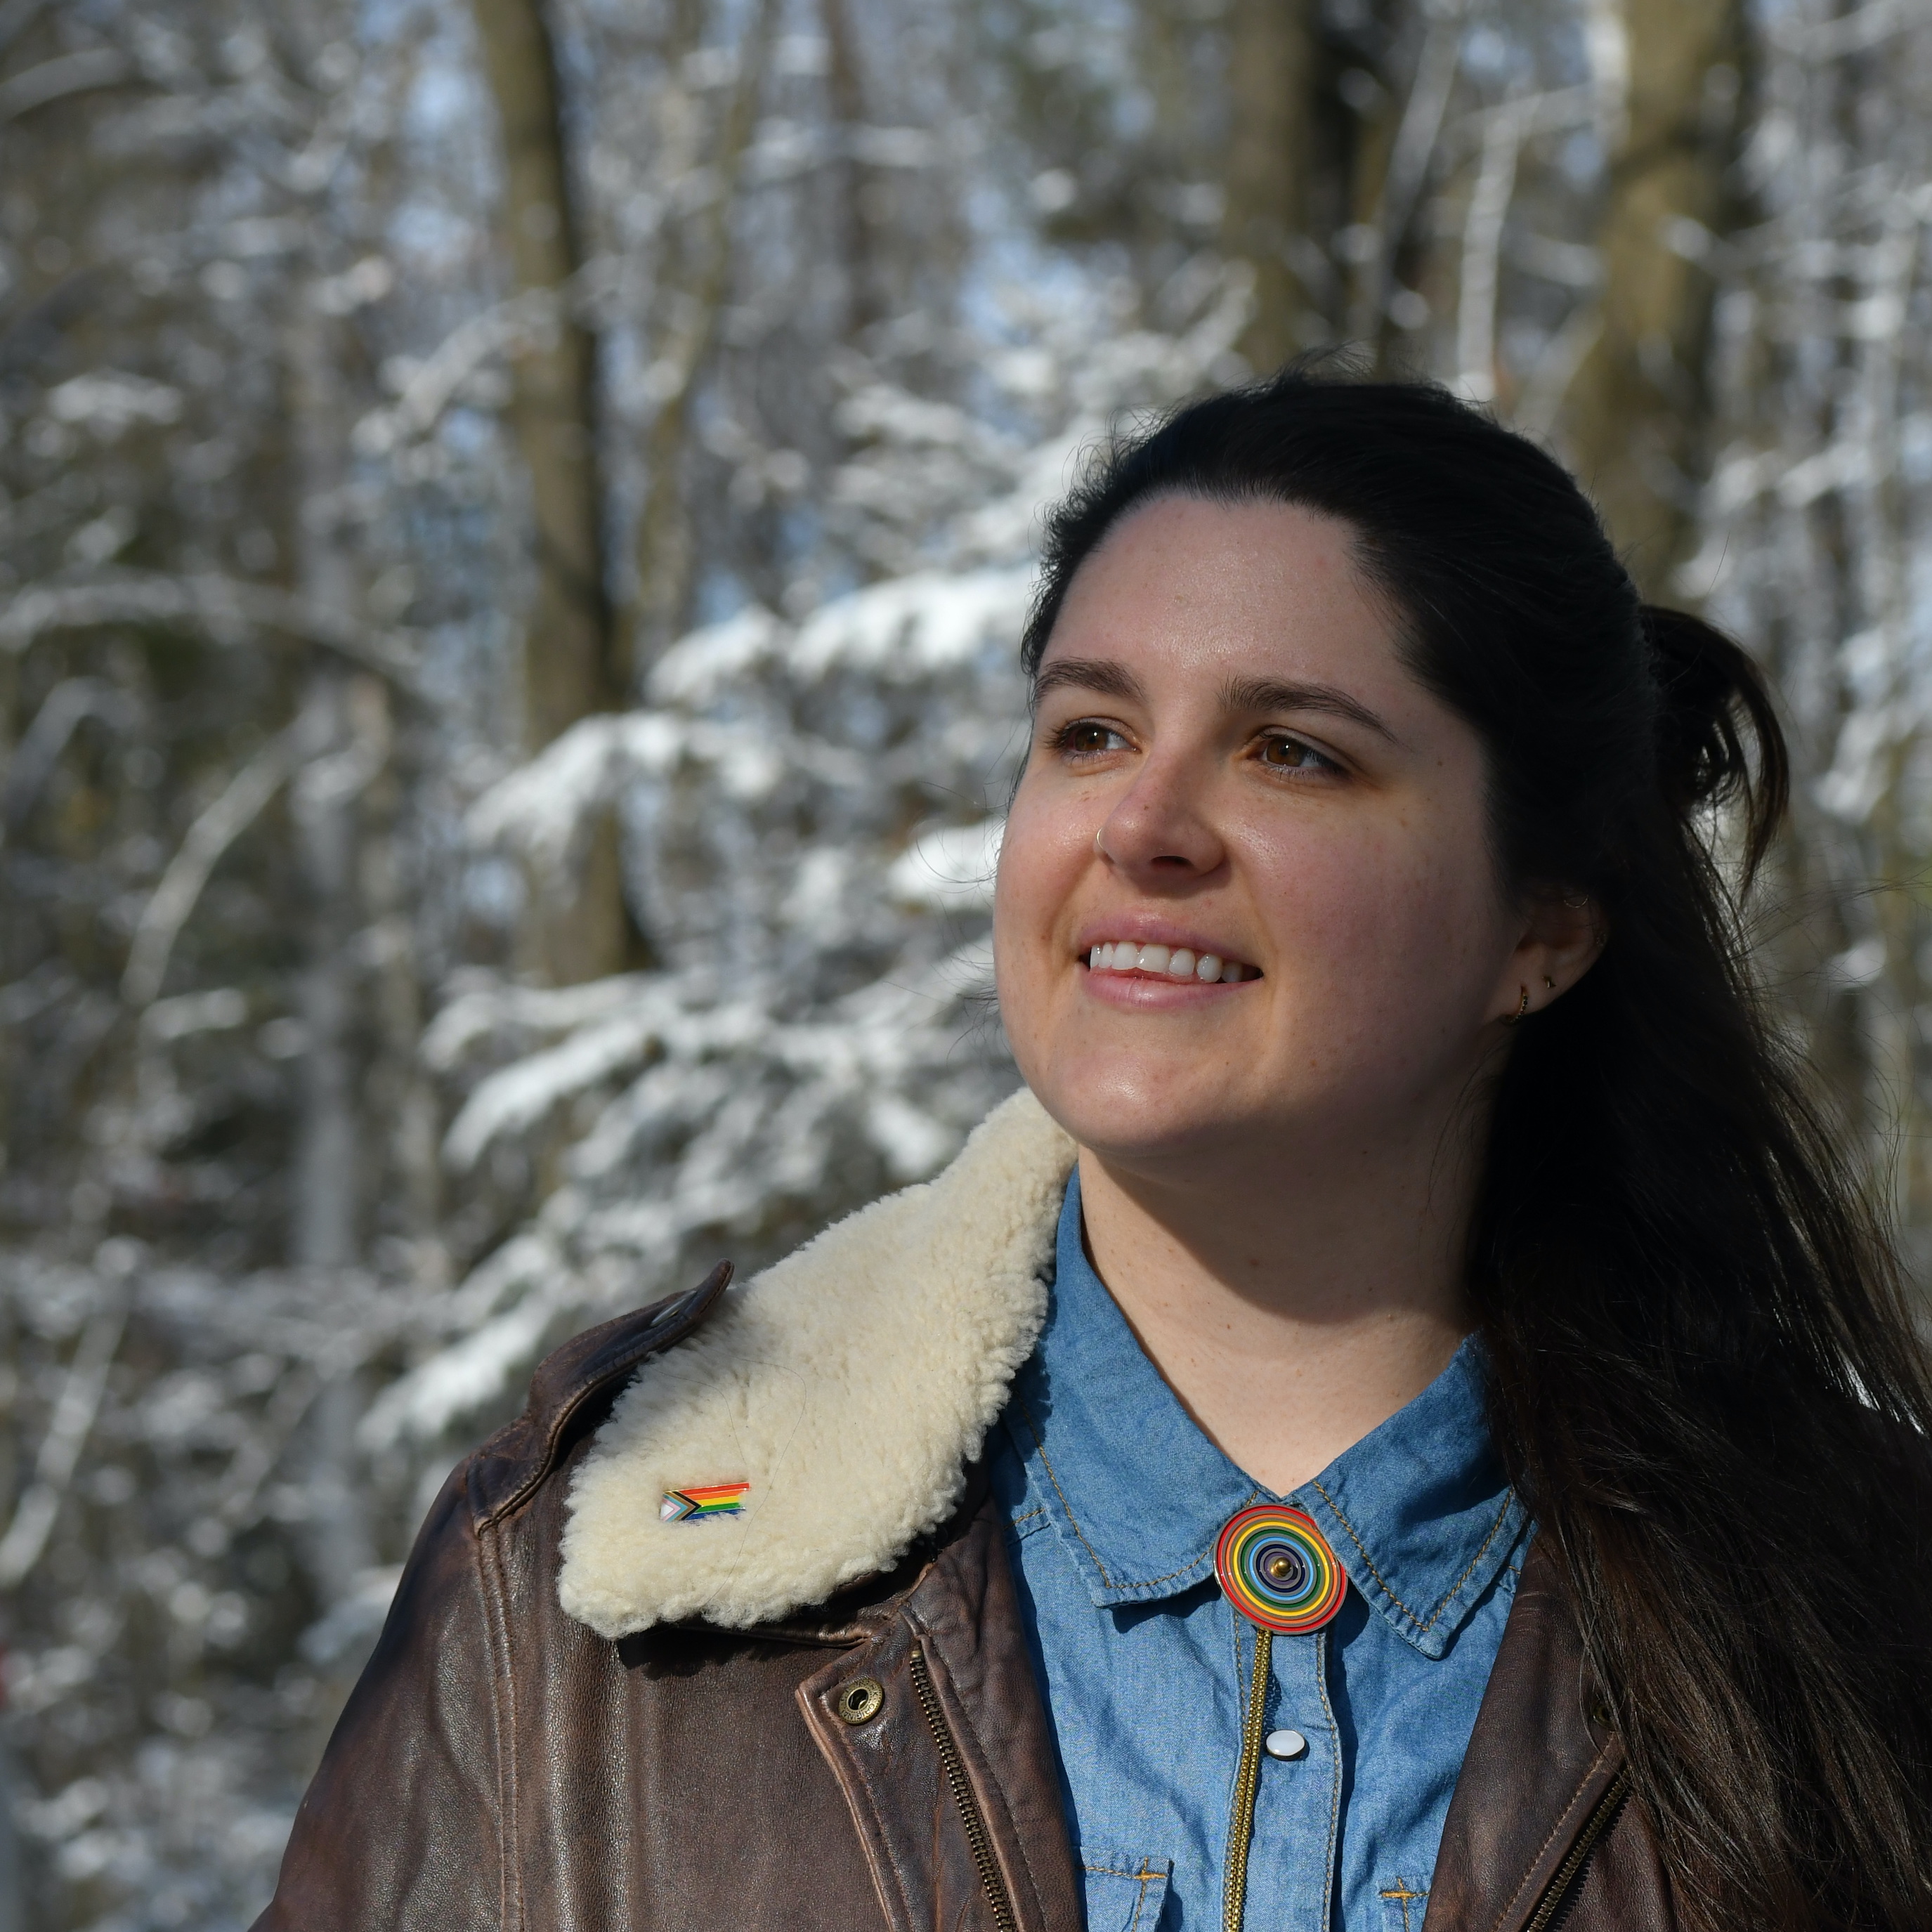 Lauren smiling in front of snowy trees. 